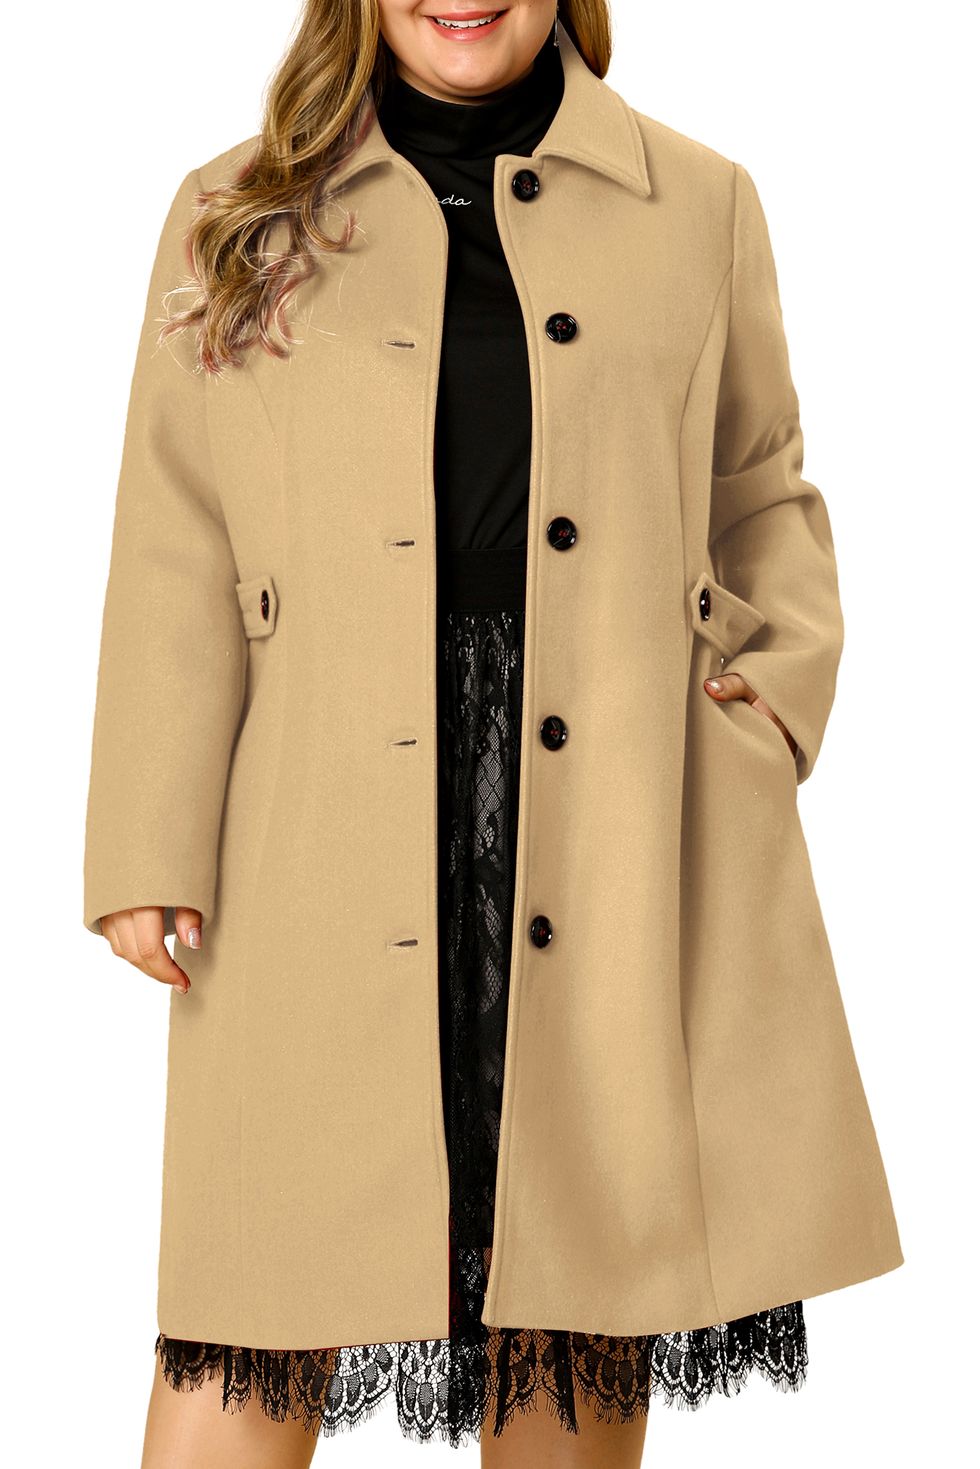 Unique Bargains Women's Plus Size Fleece Jacket Zip Front Long